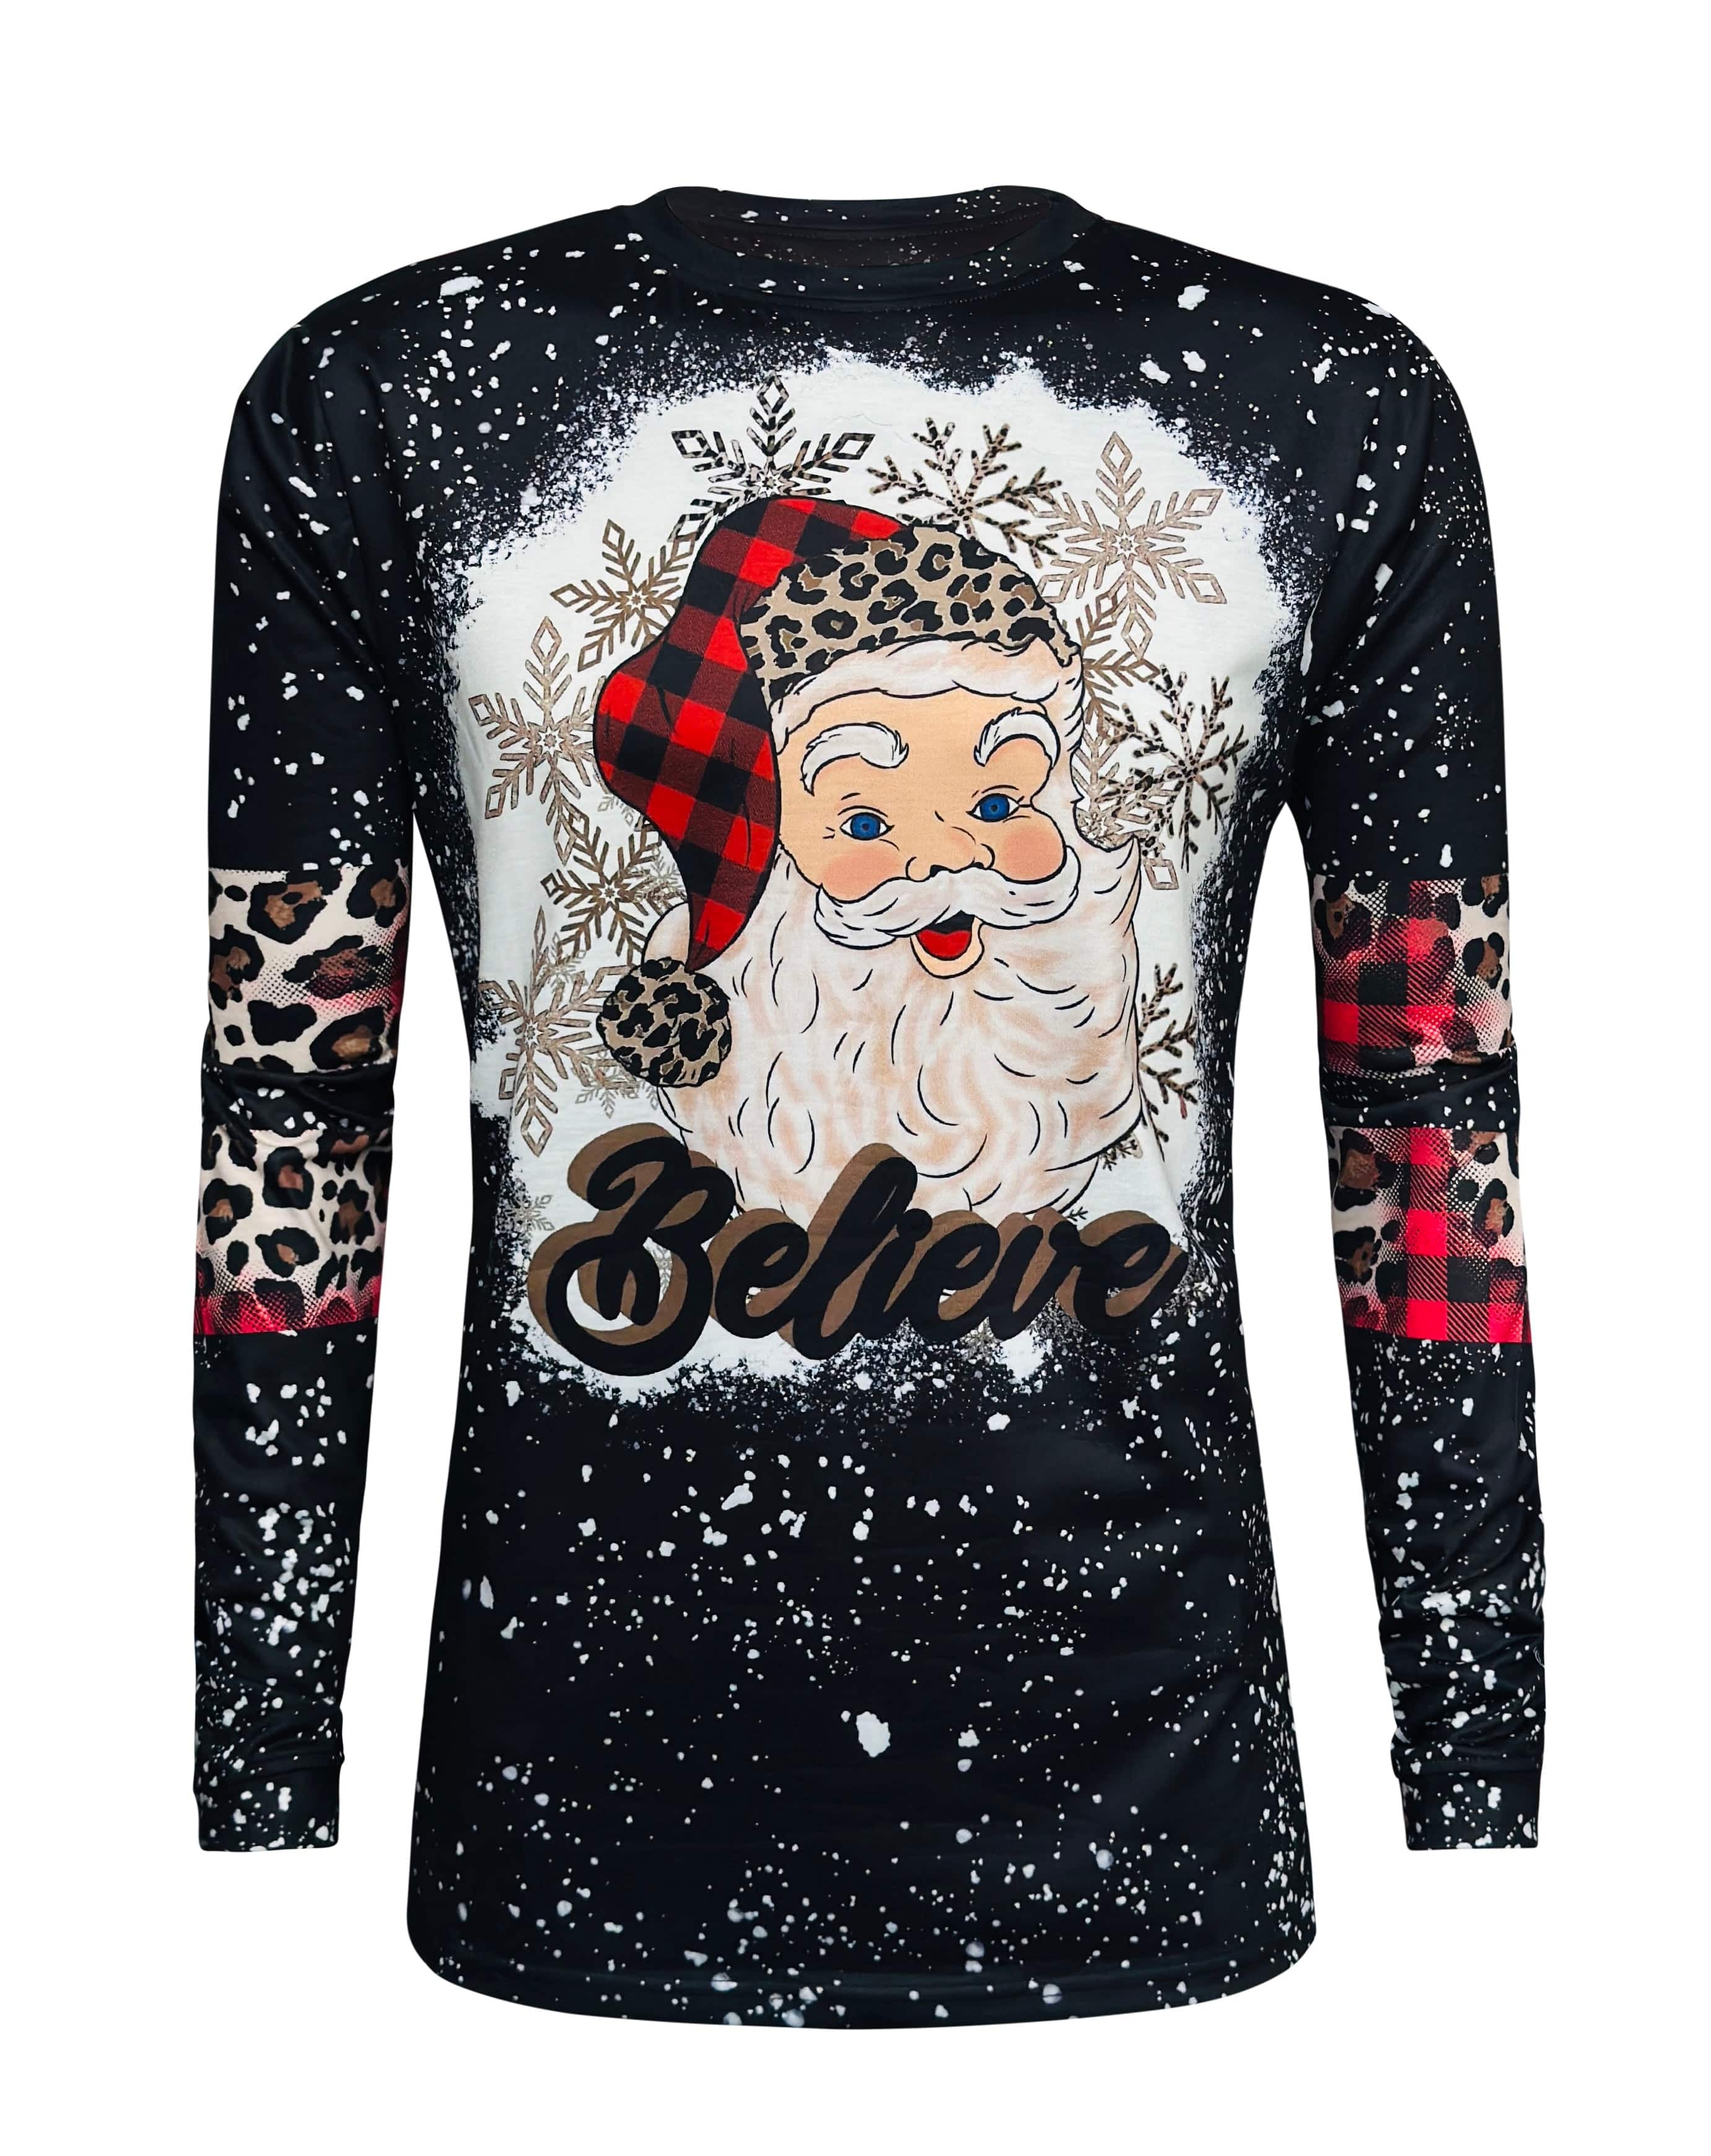 Santa Believe Black Long Sleeve Top